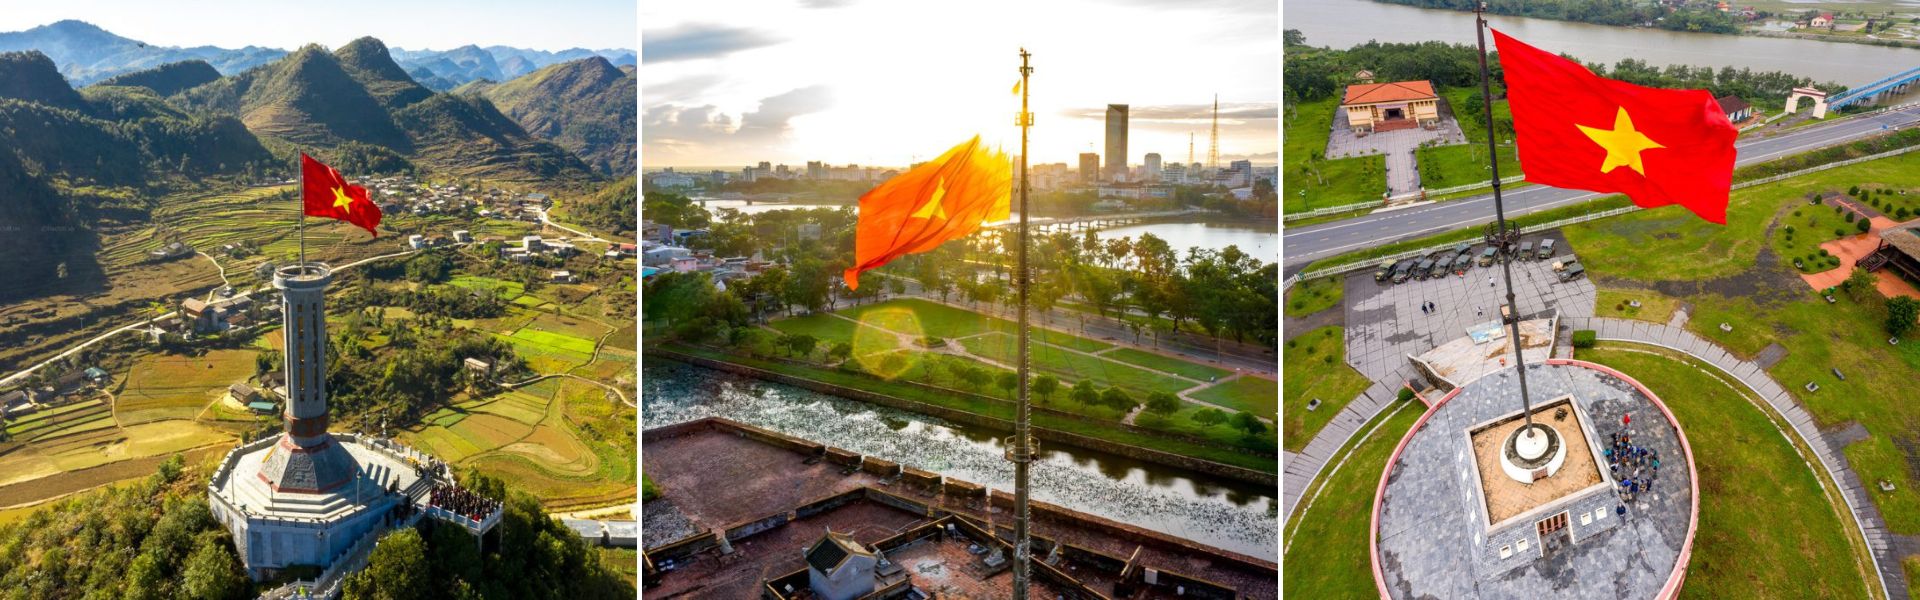 Bandera de Vietnam: historia, diseño y significado